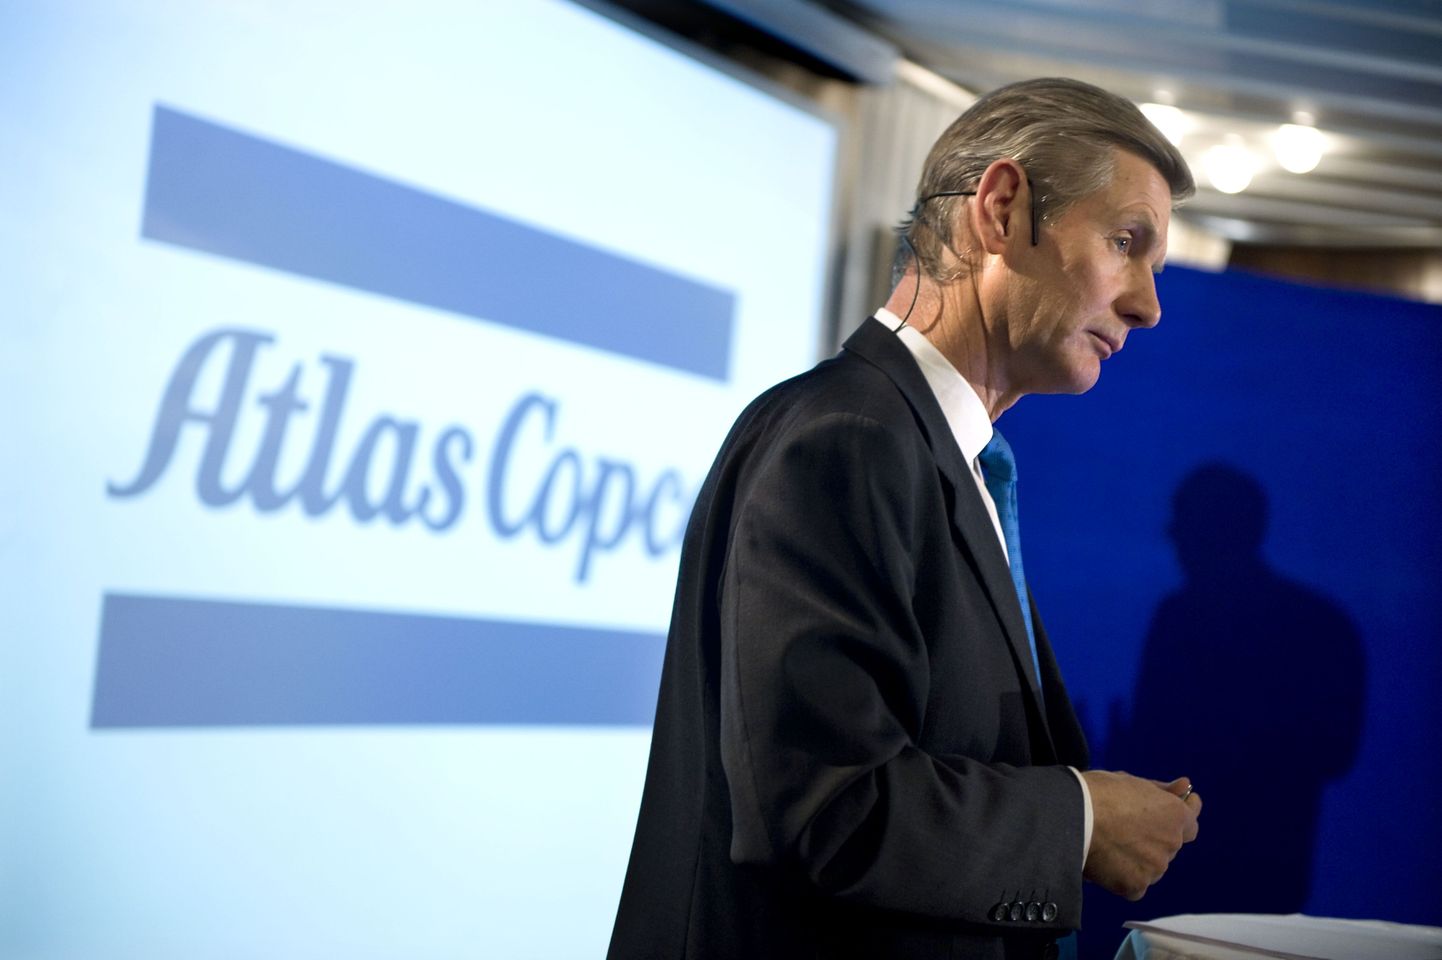 Atlas Copcot viis aastat juhtinud Gunnar Brock, praegune Stora Enso direktorite nõukogu esimees, peitis Rootsi riigi eest oma välismaist tulu.